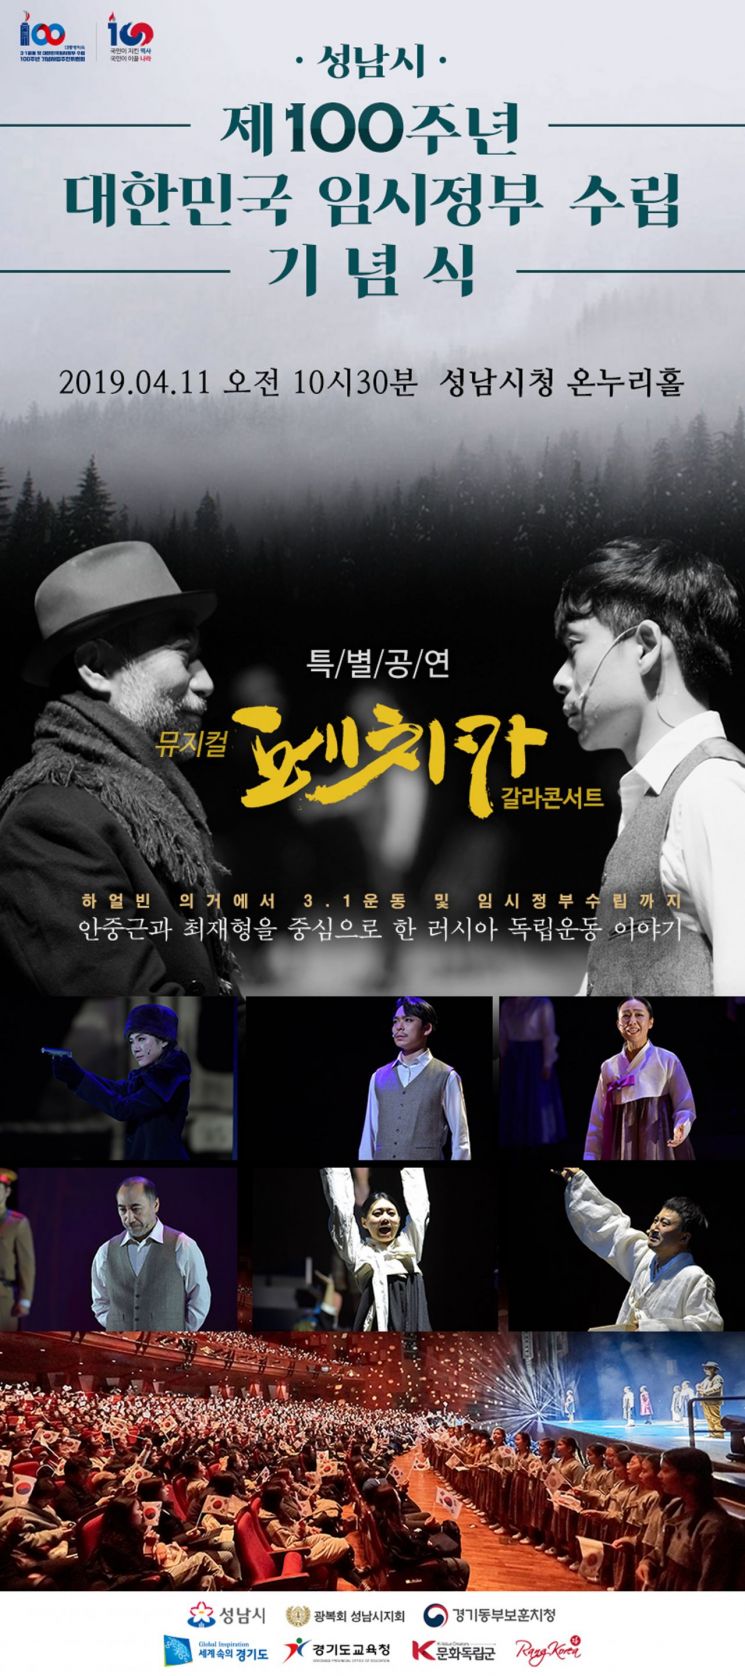 안중근 의사 의거 다룬 뮤지컬 성남시청 무대 오른다